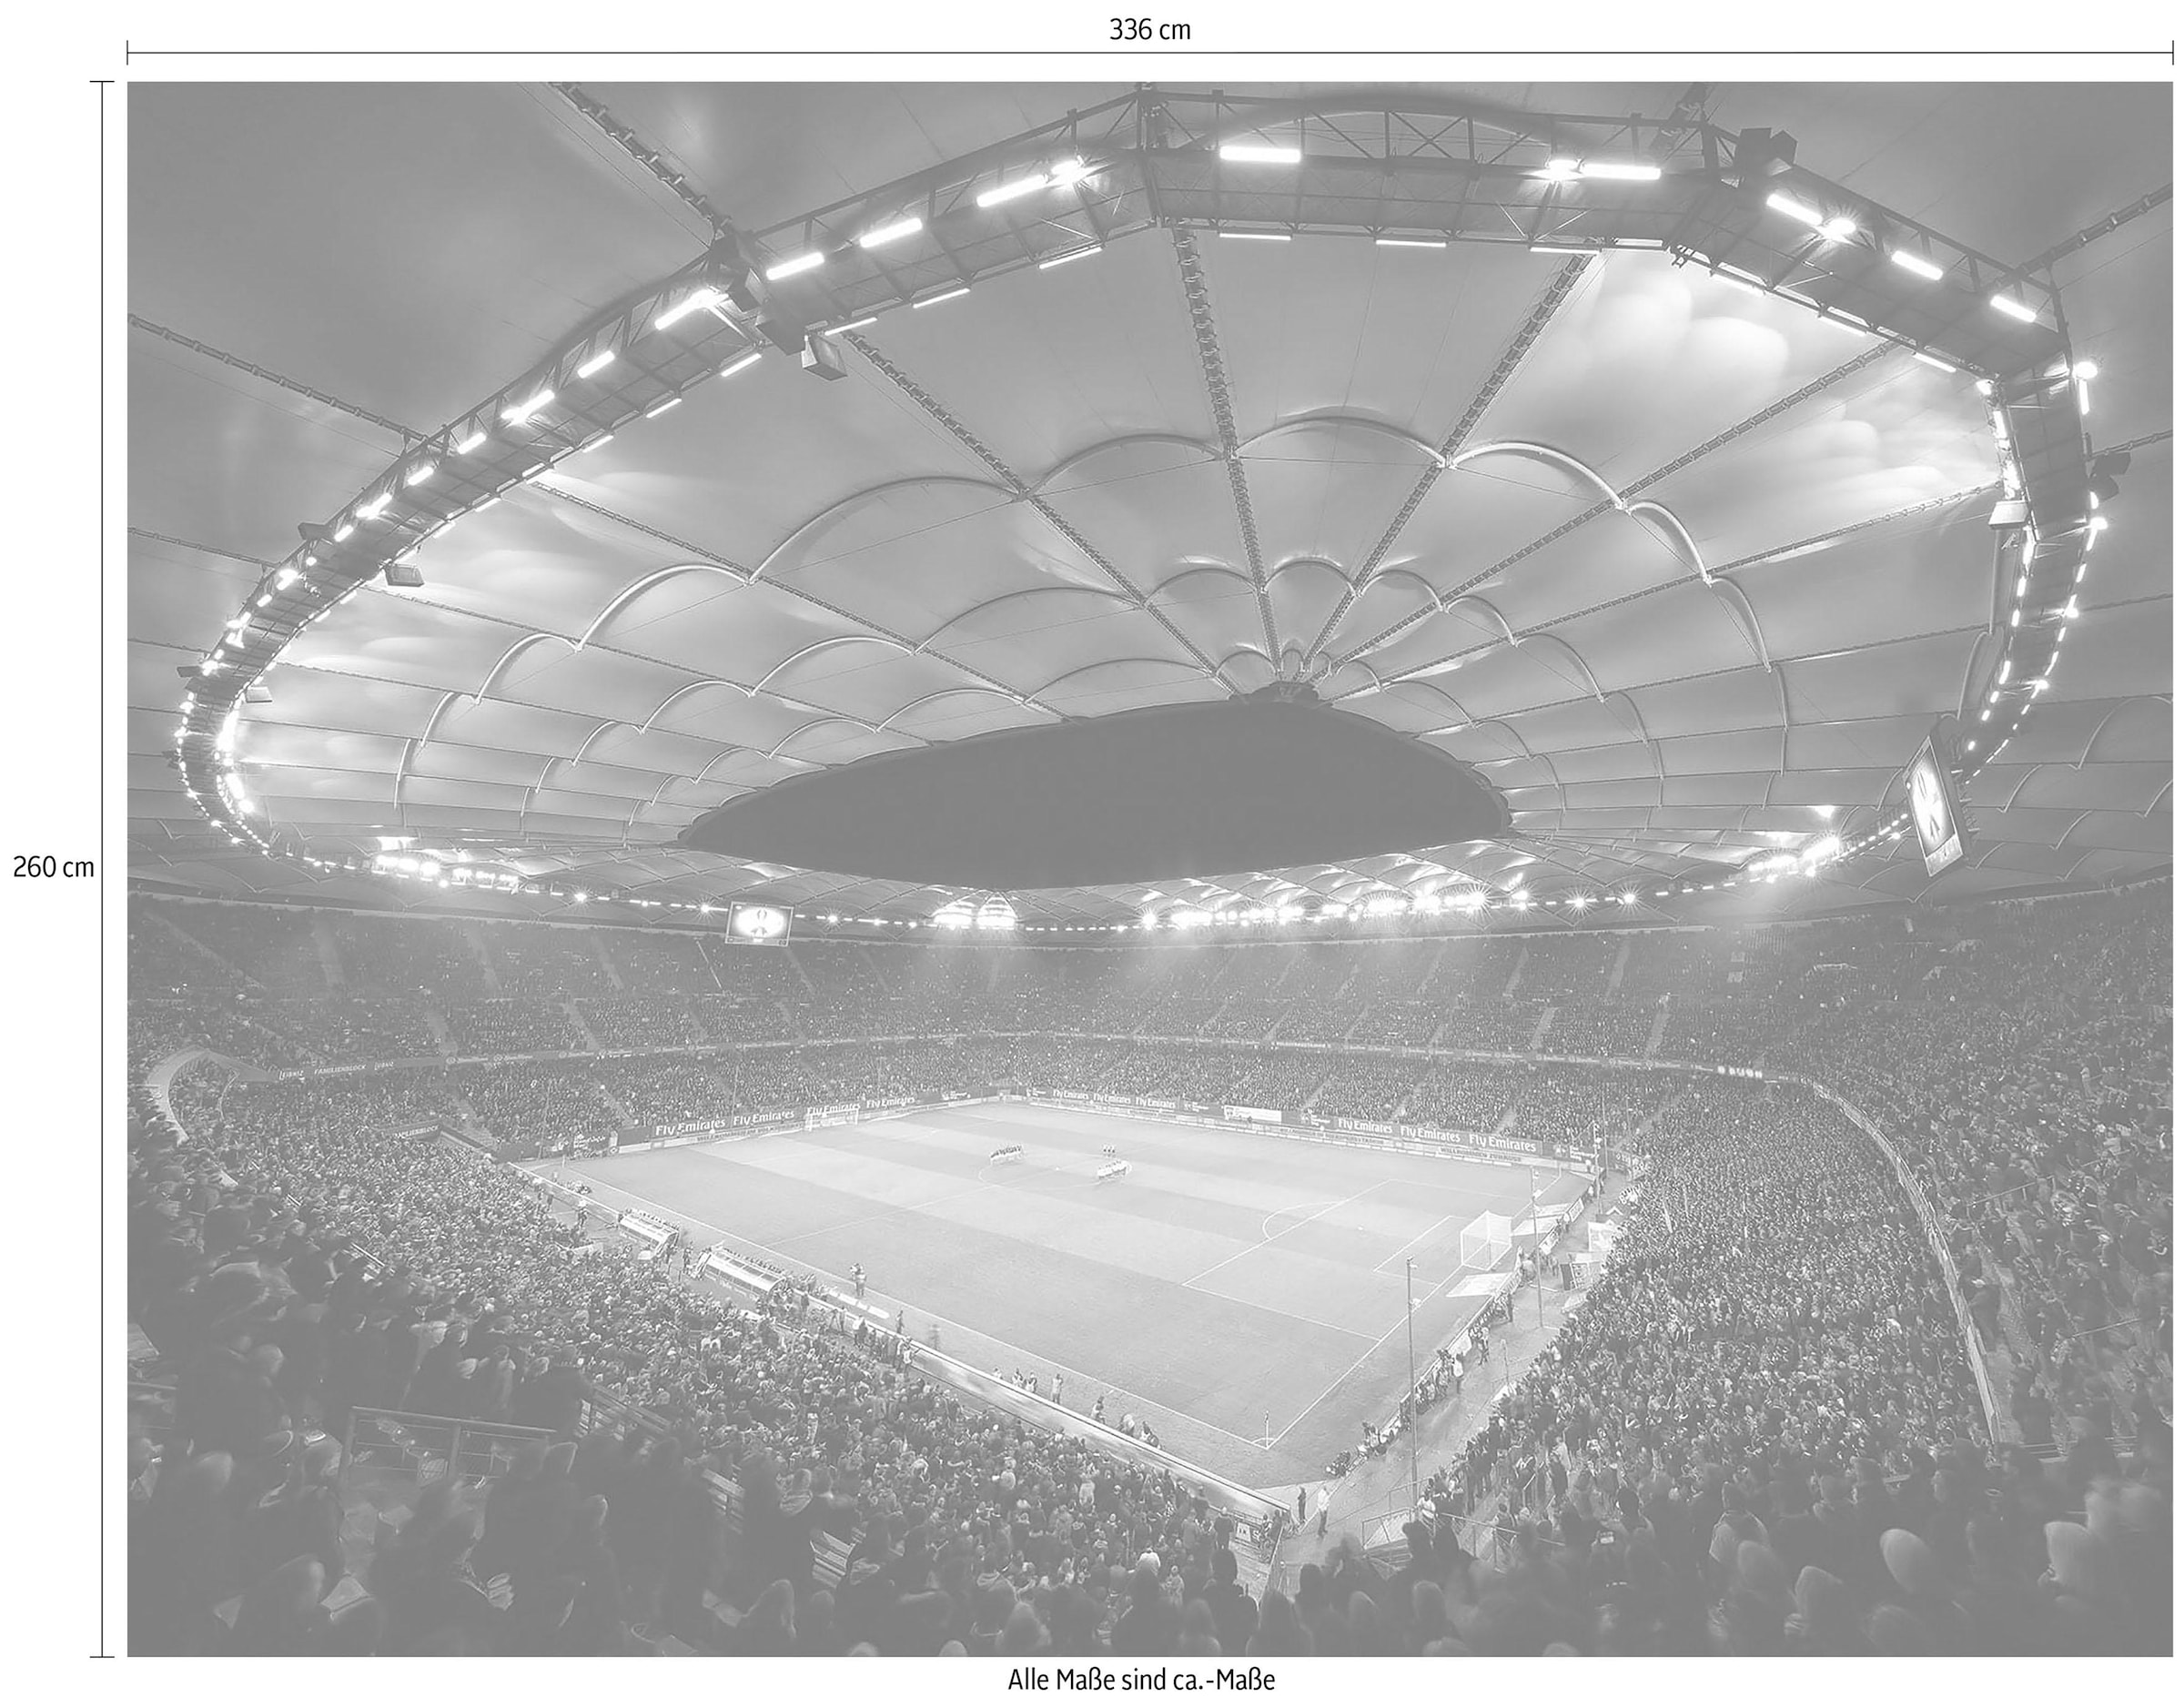 Wall-Art Vliestapete »Hamburger SV im Stadion bei Nacht« bequem kaufen